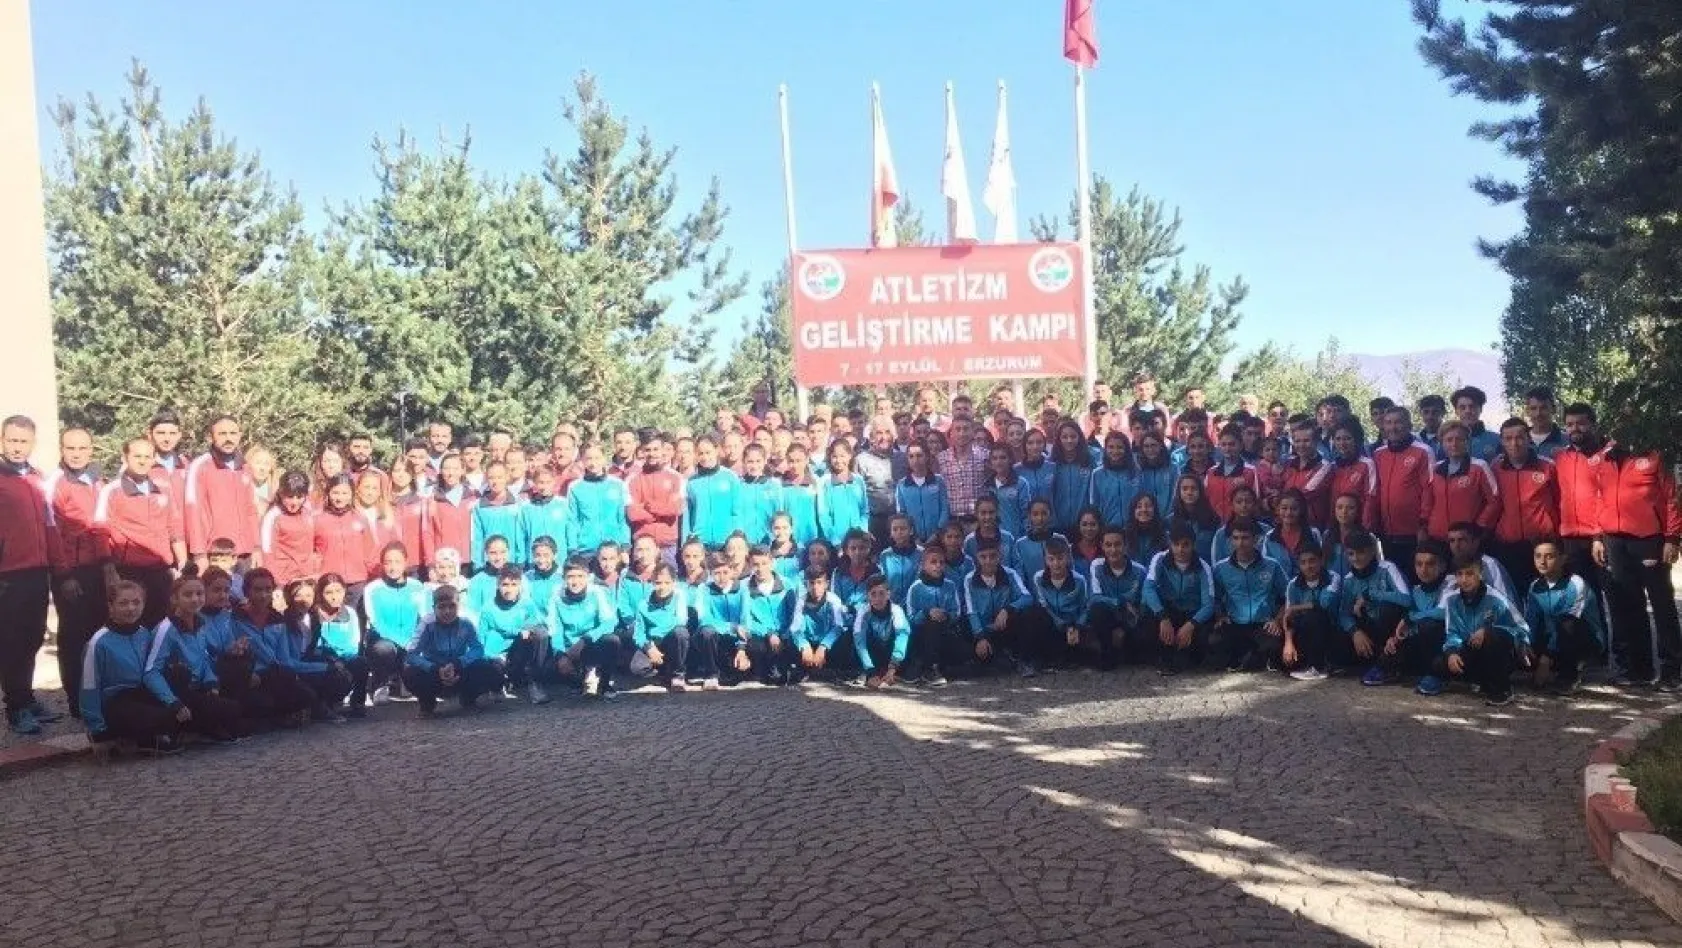 Atletizm kampı Erzurum'da başladı
